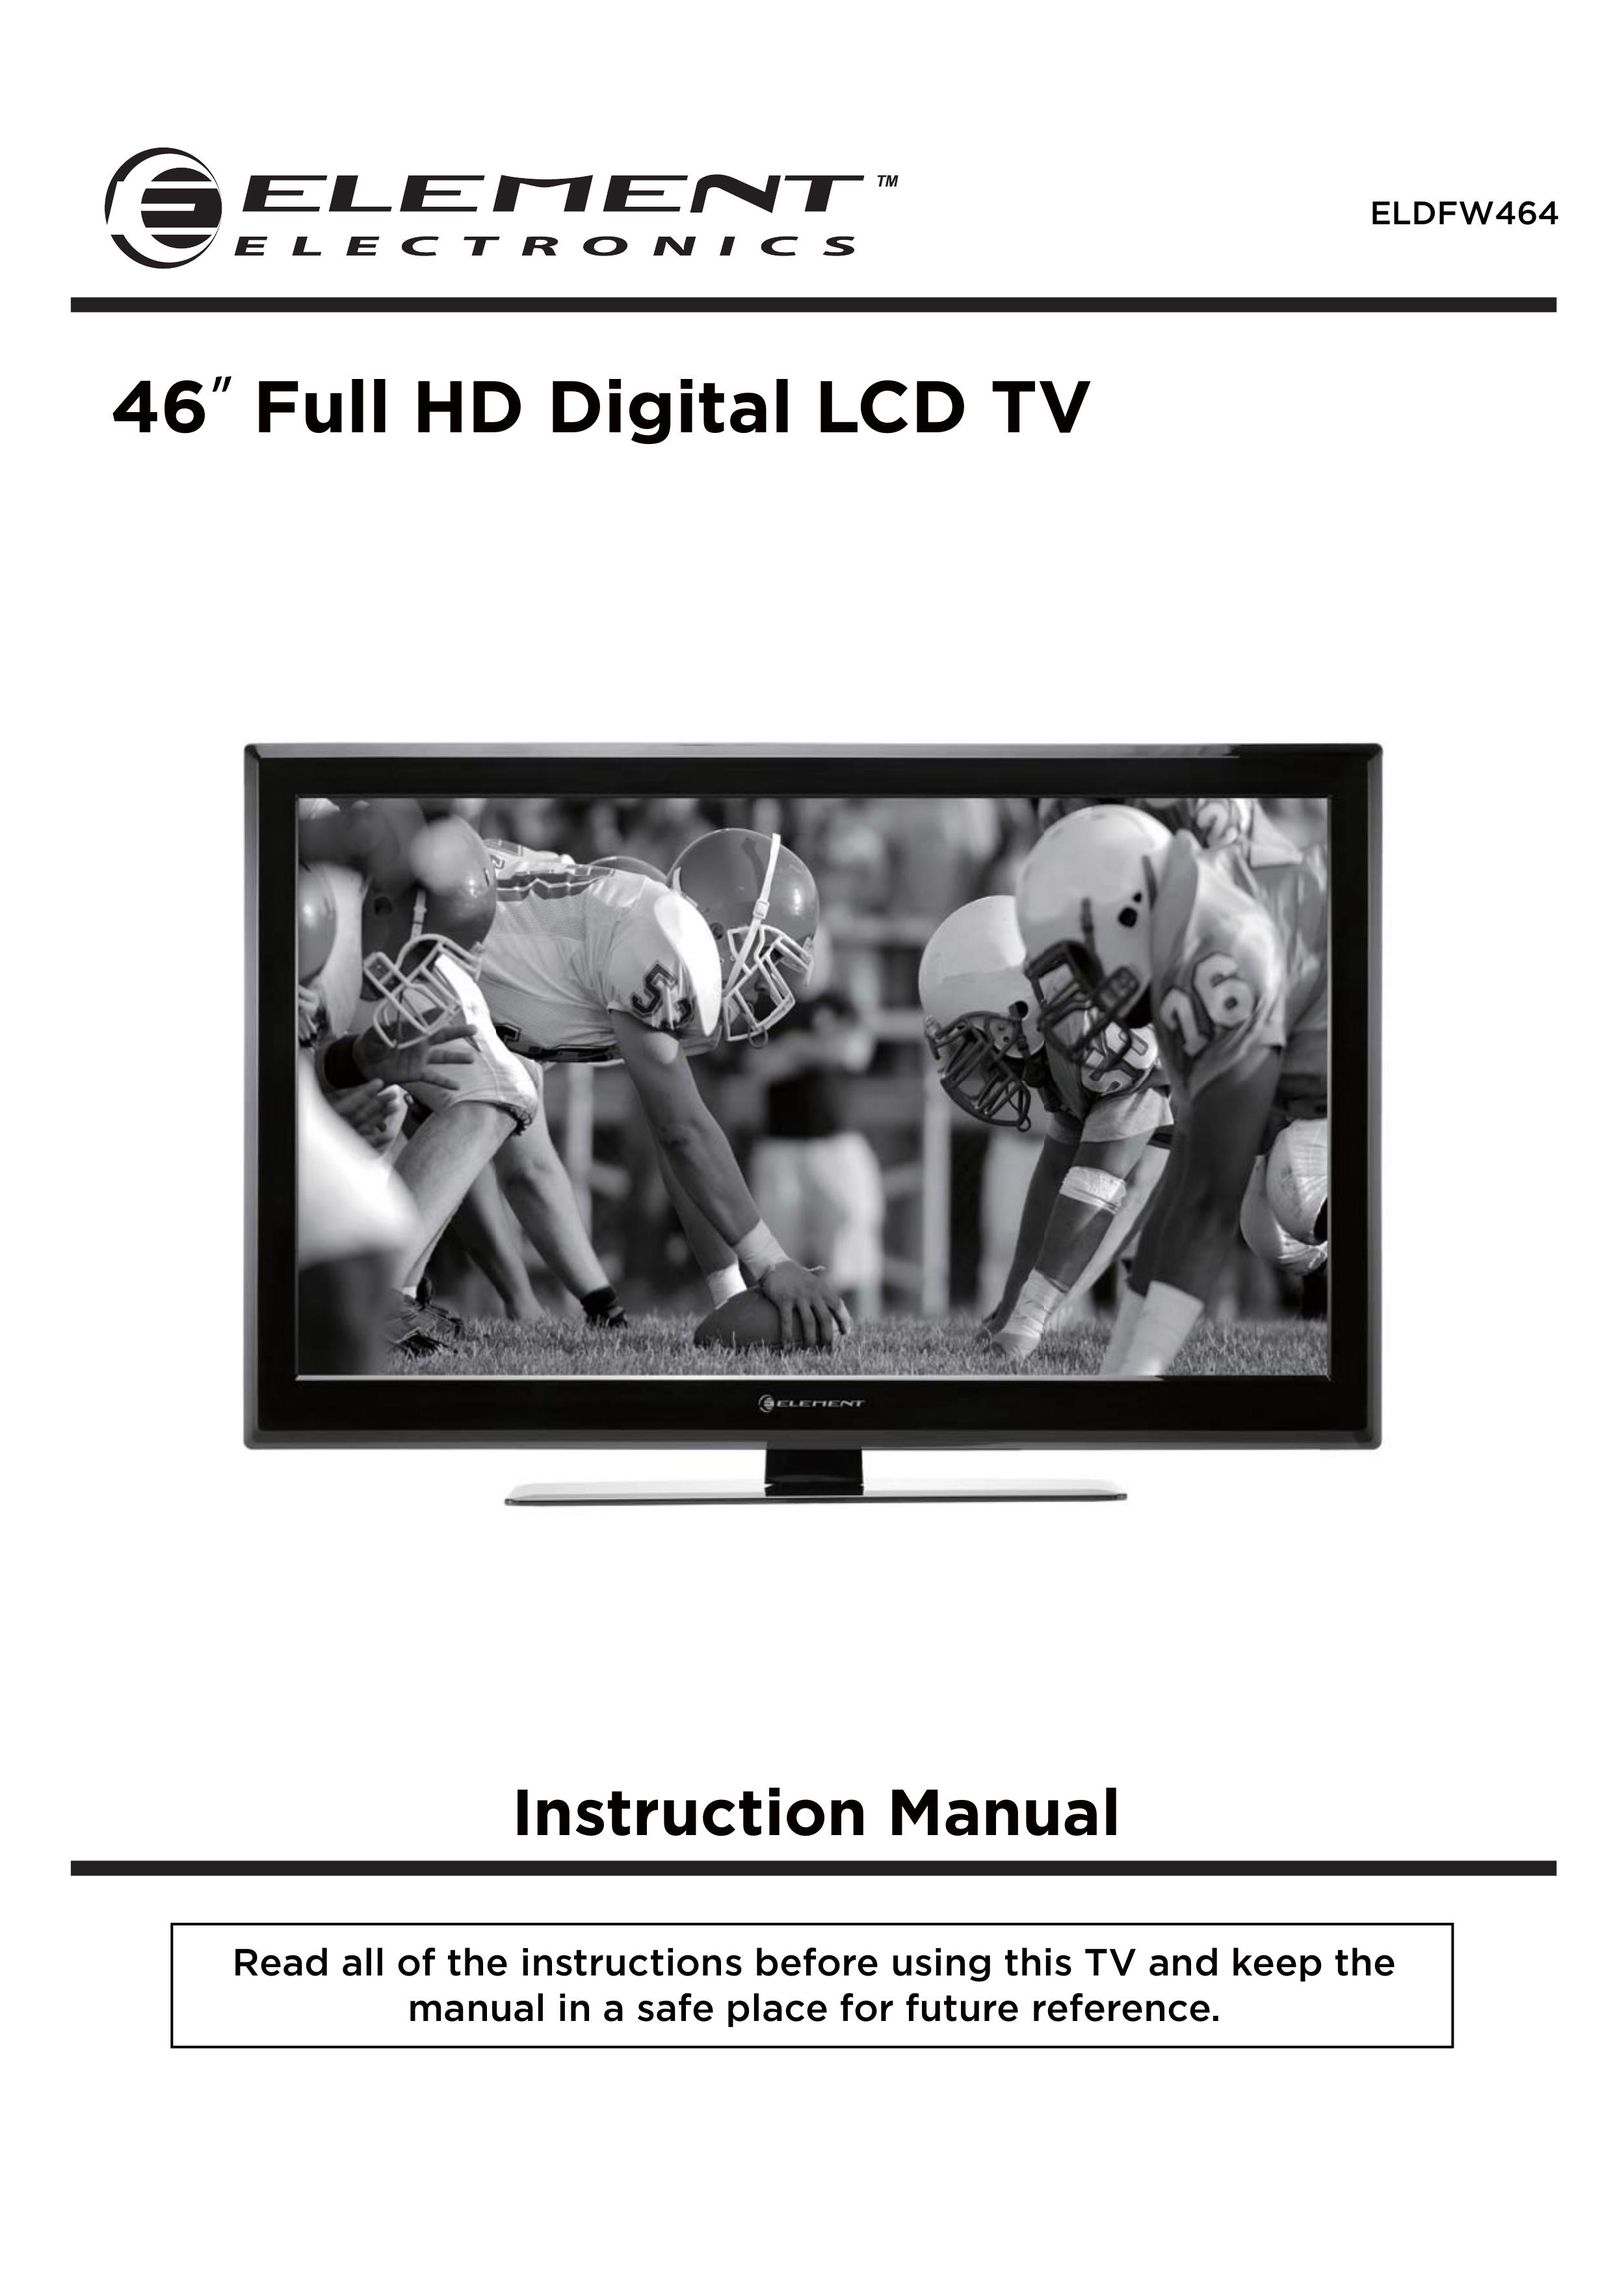 Element Electronics ELDFW464 Flat Panel Television User Manual